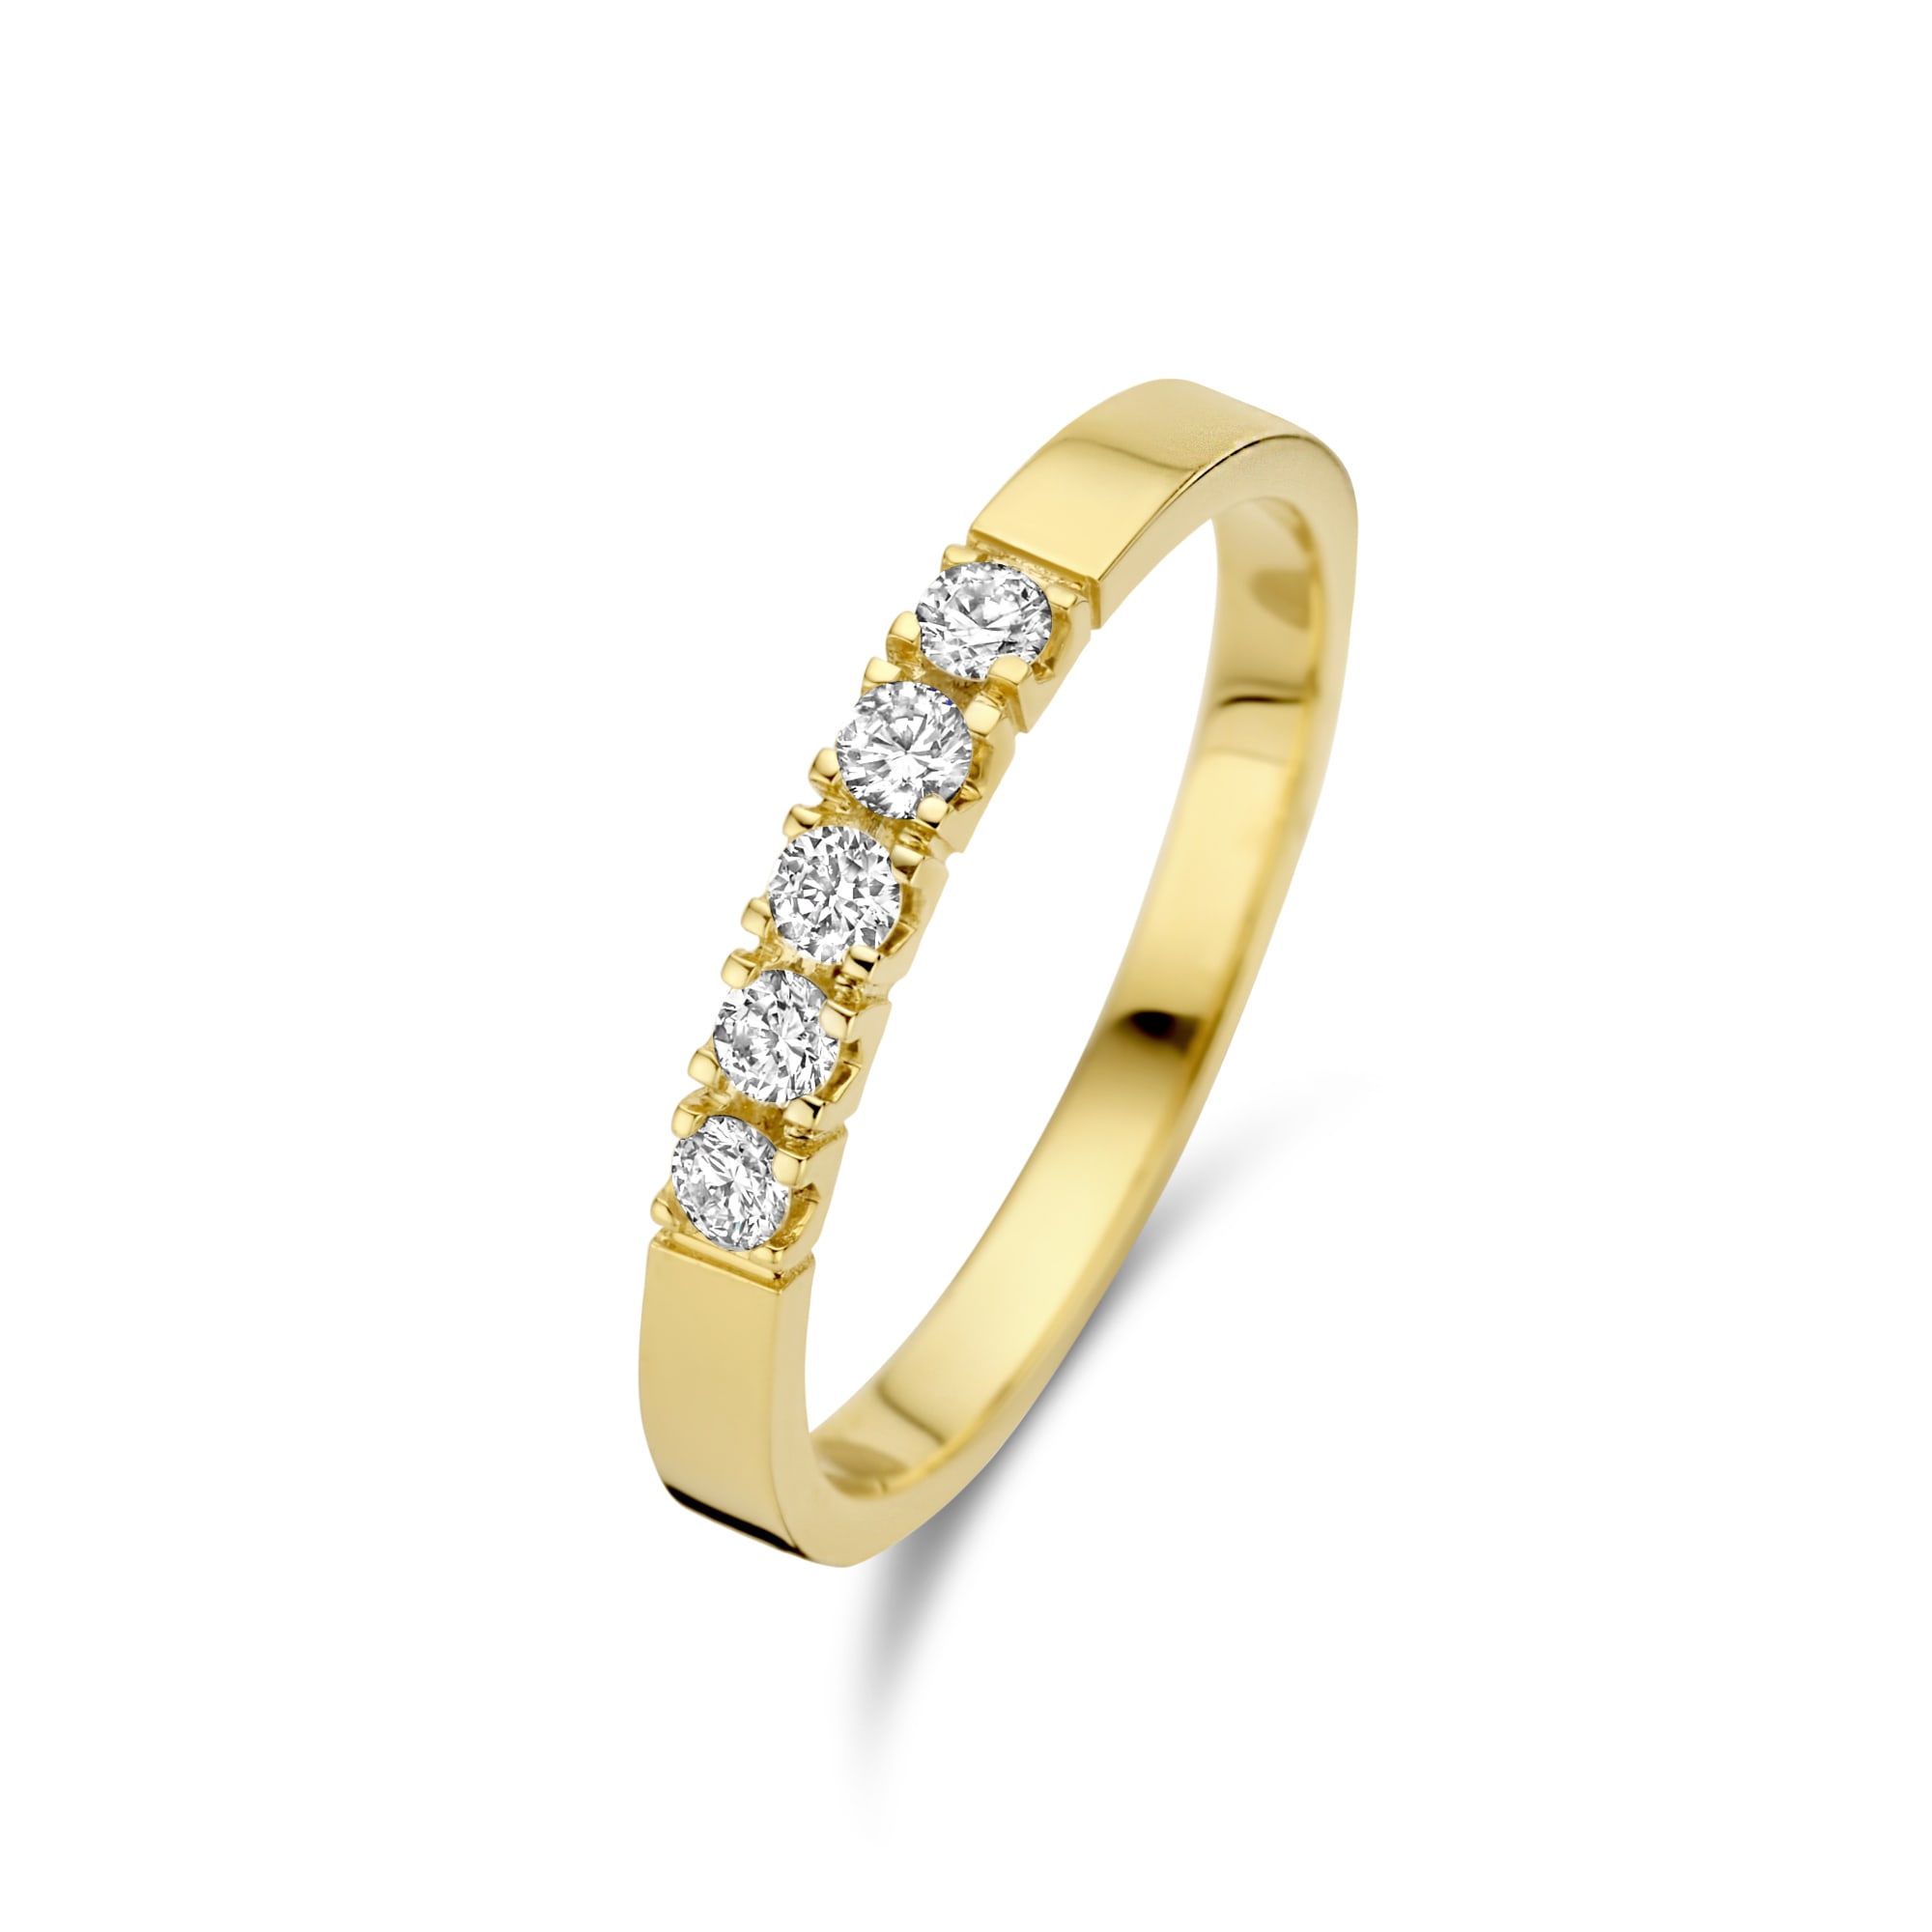 Isabel Bernard De La Paix Ring Guld, gold